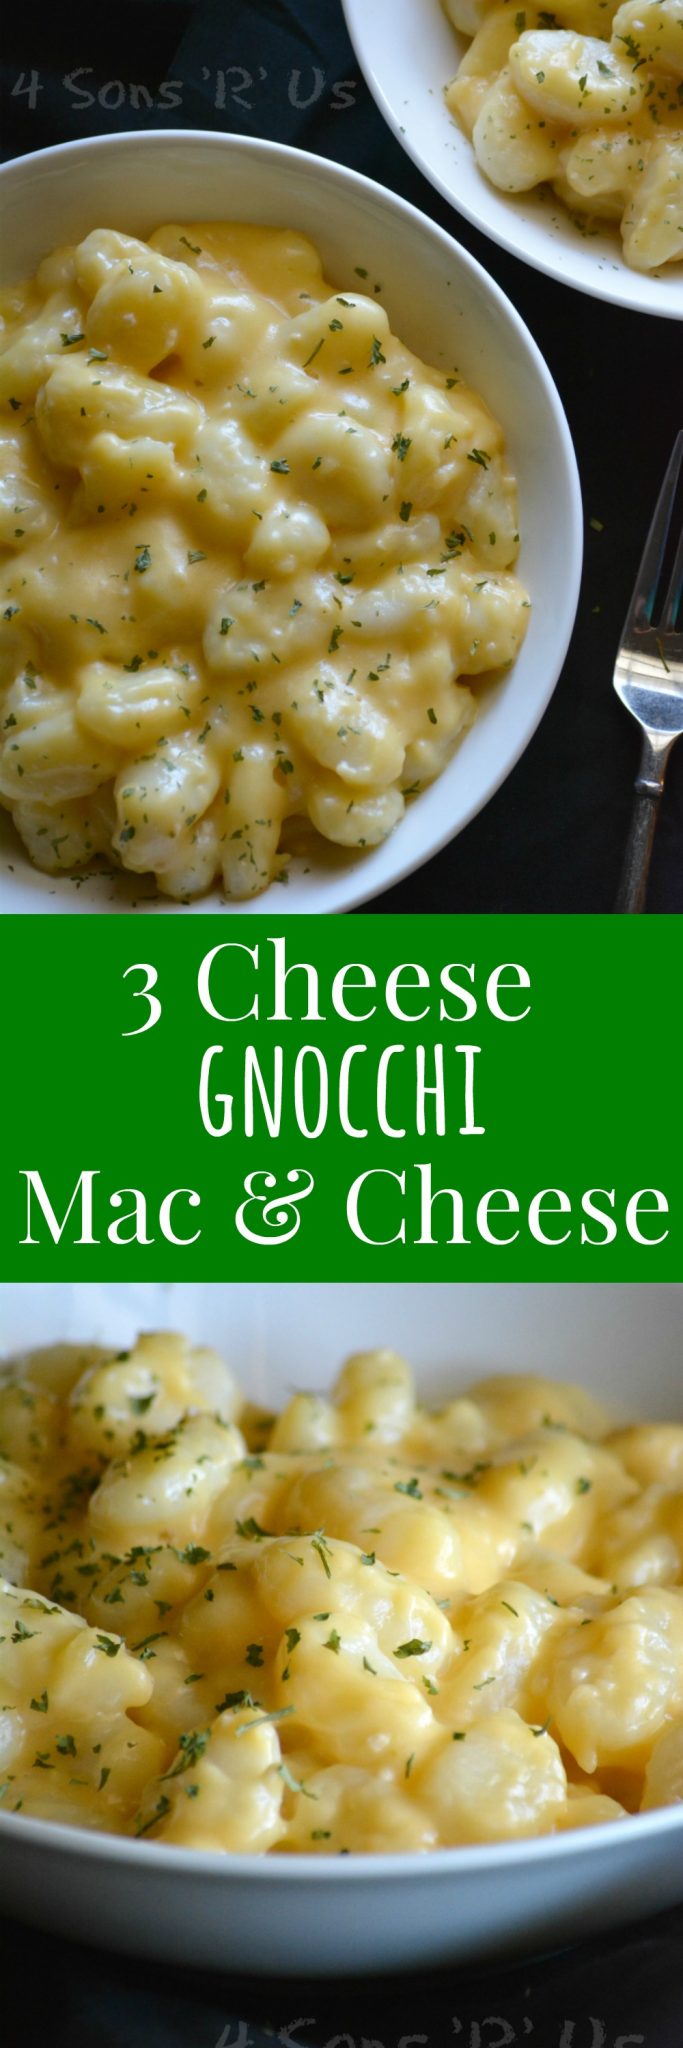 Three Cheese Gnocchi Mac & Cheese - 4 Sons 'R' Us